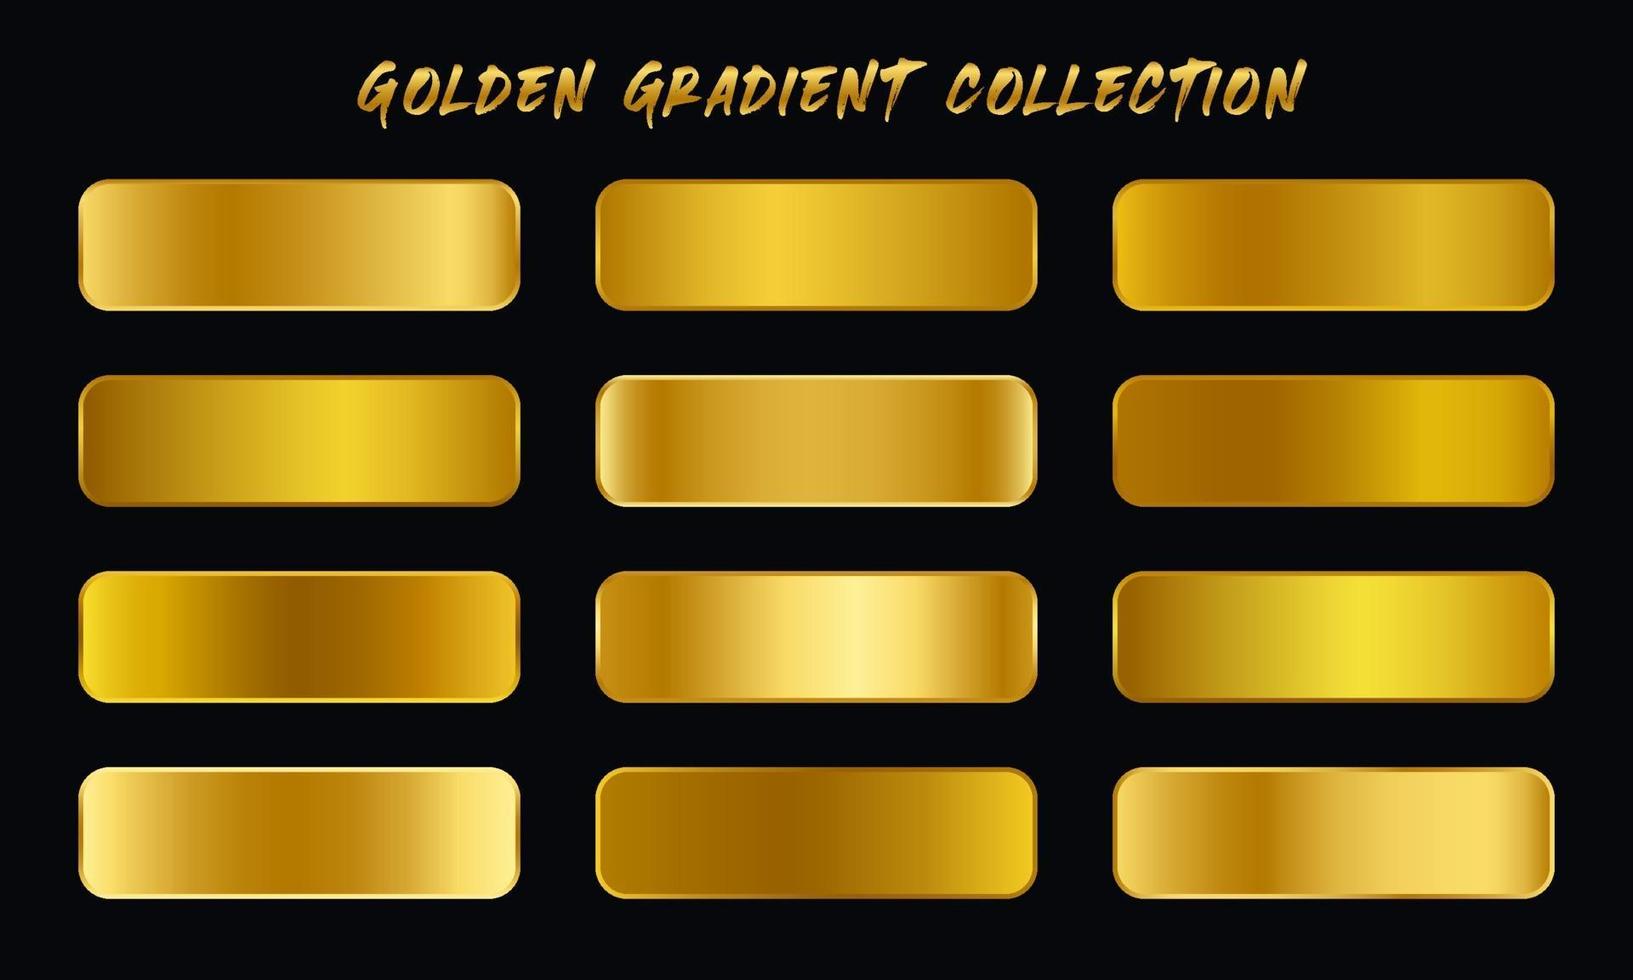 Golden Gradients Swatches Set vector